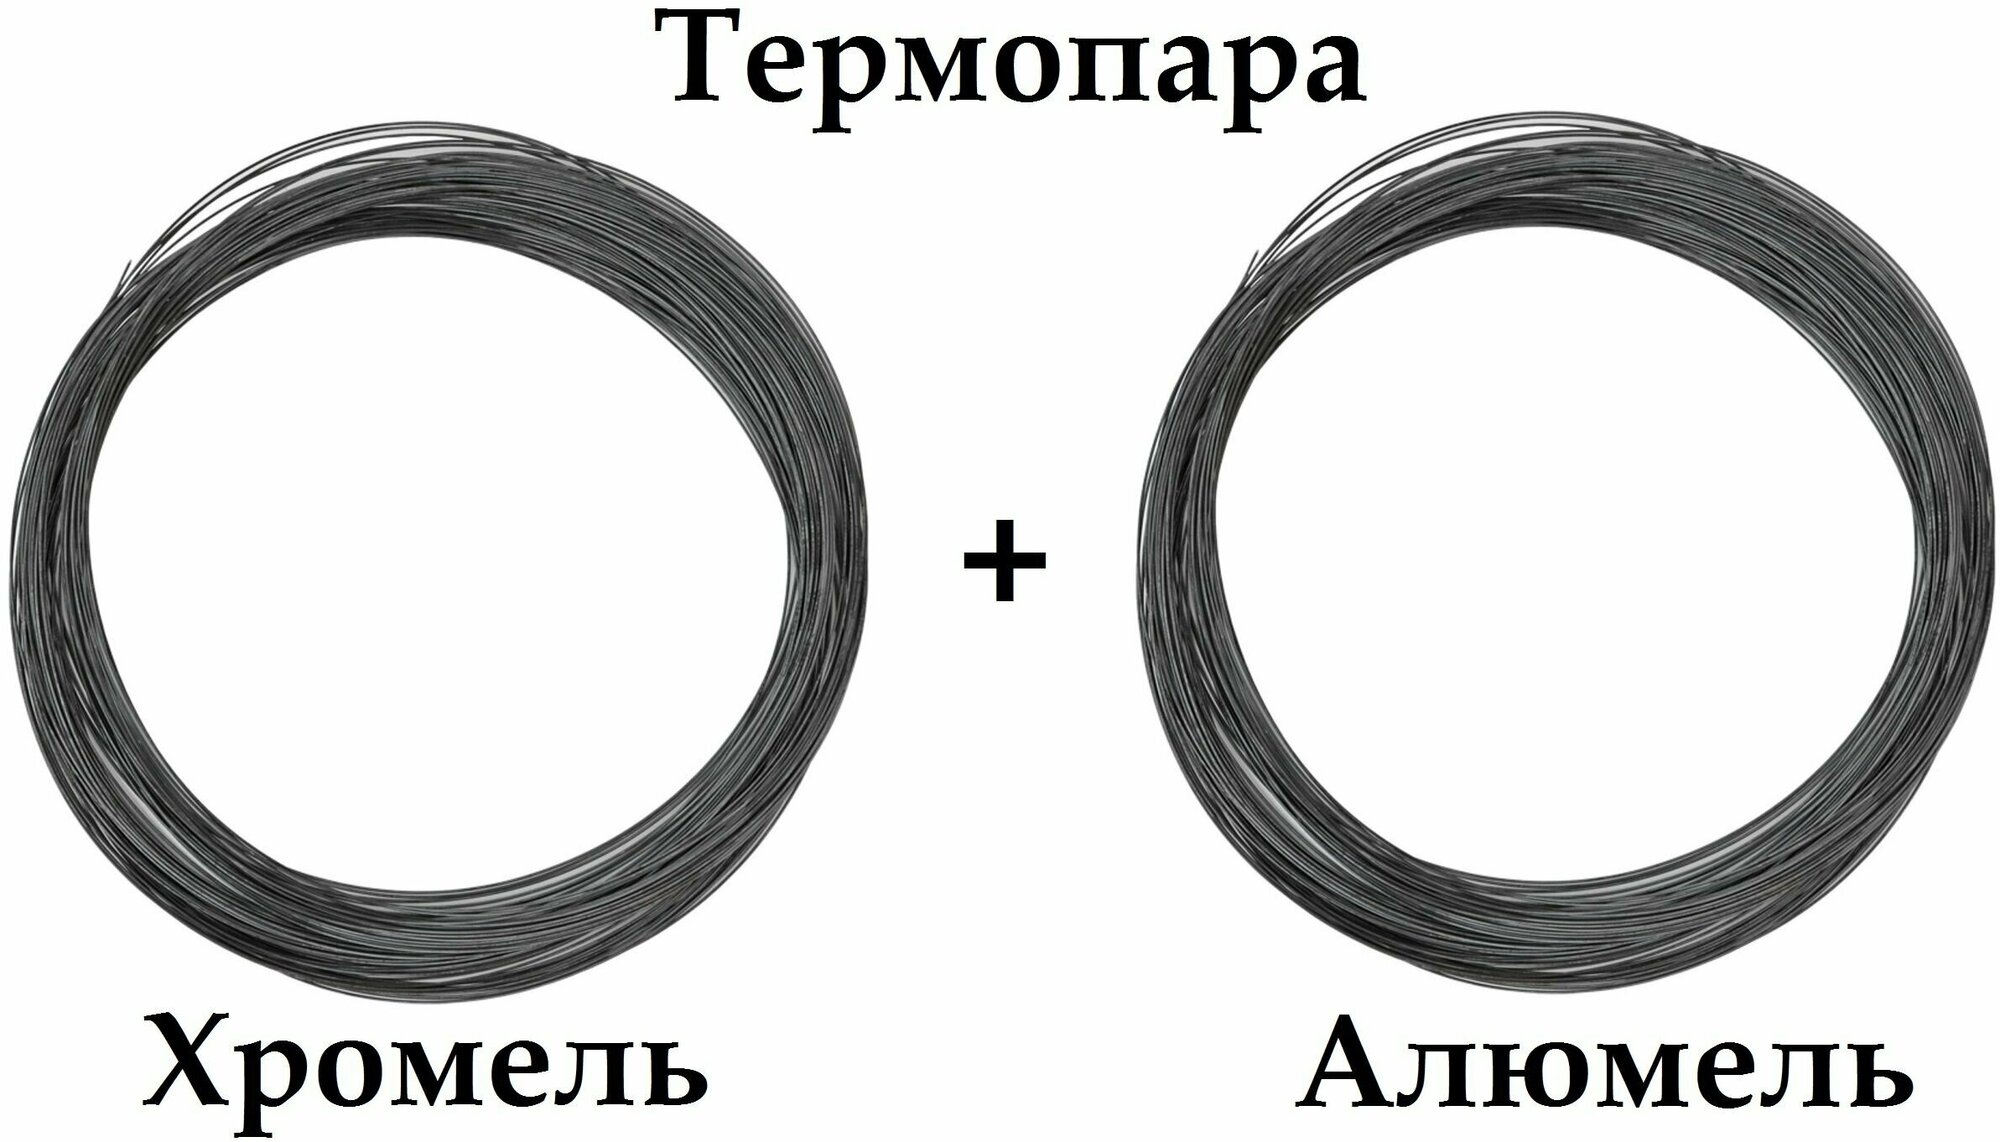 Термопара Хромель НХ95 + Алюмель нмцак 2-2-1 диаметр 15 мм -1+1 м. итого 2 метра для производства Термоэлектродов реостатов.